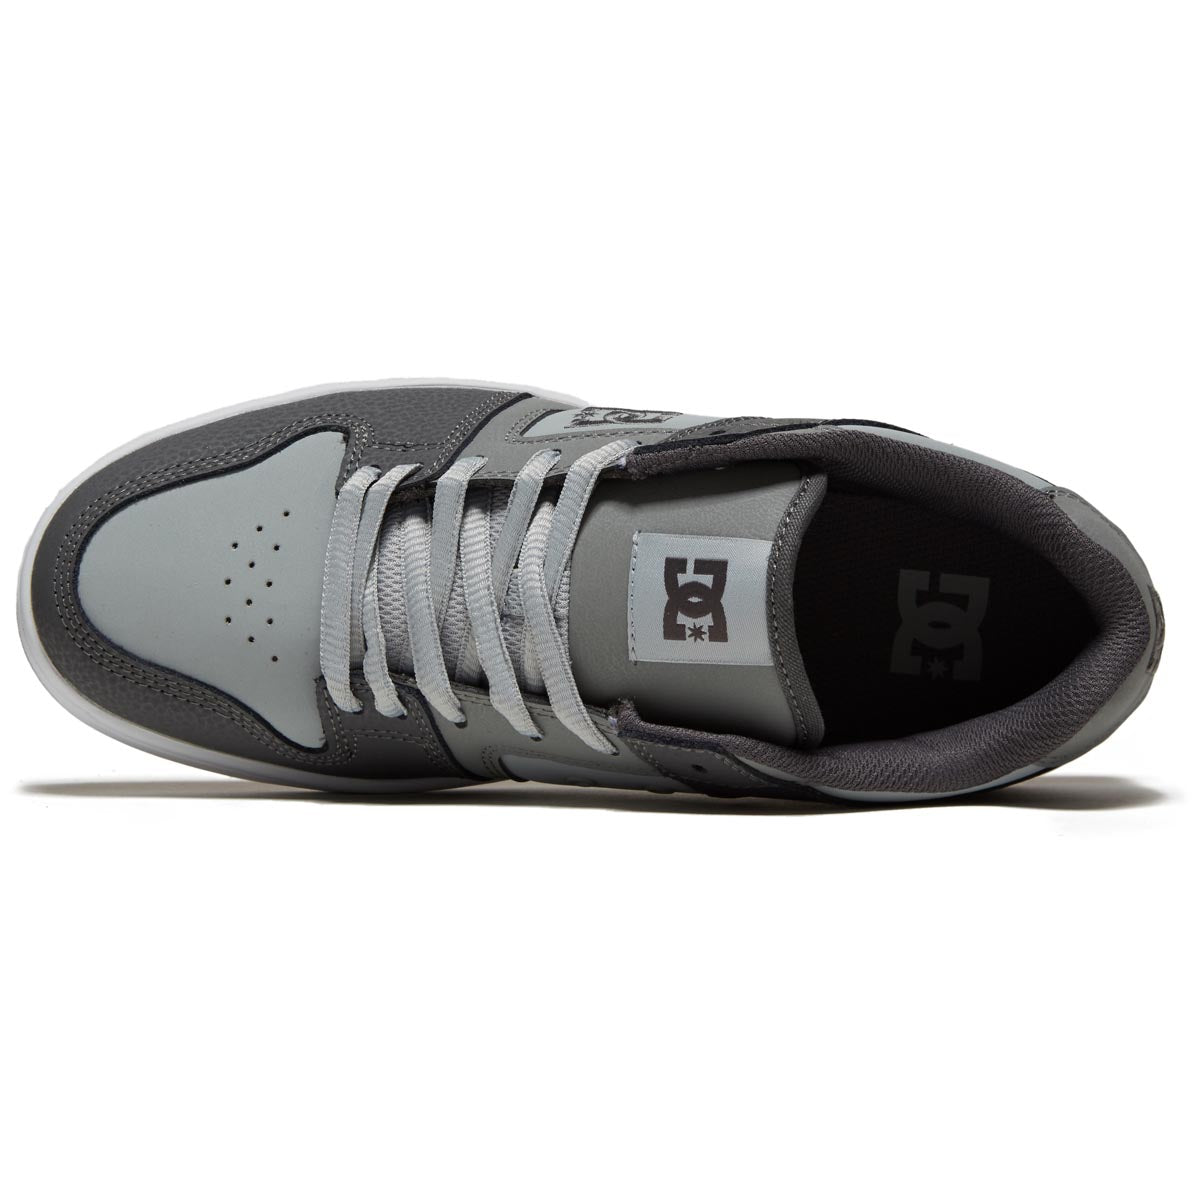 DC Manteca 4 Shoes - Grey/Gum image 3